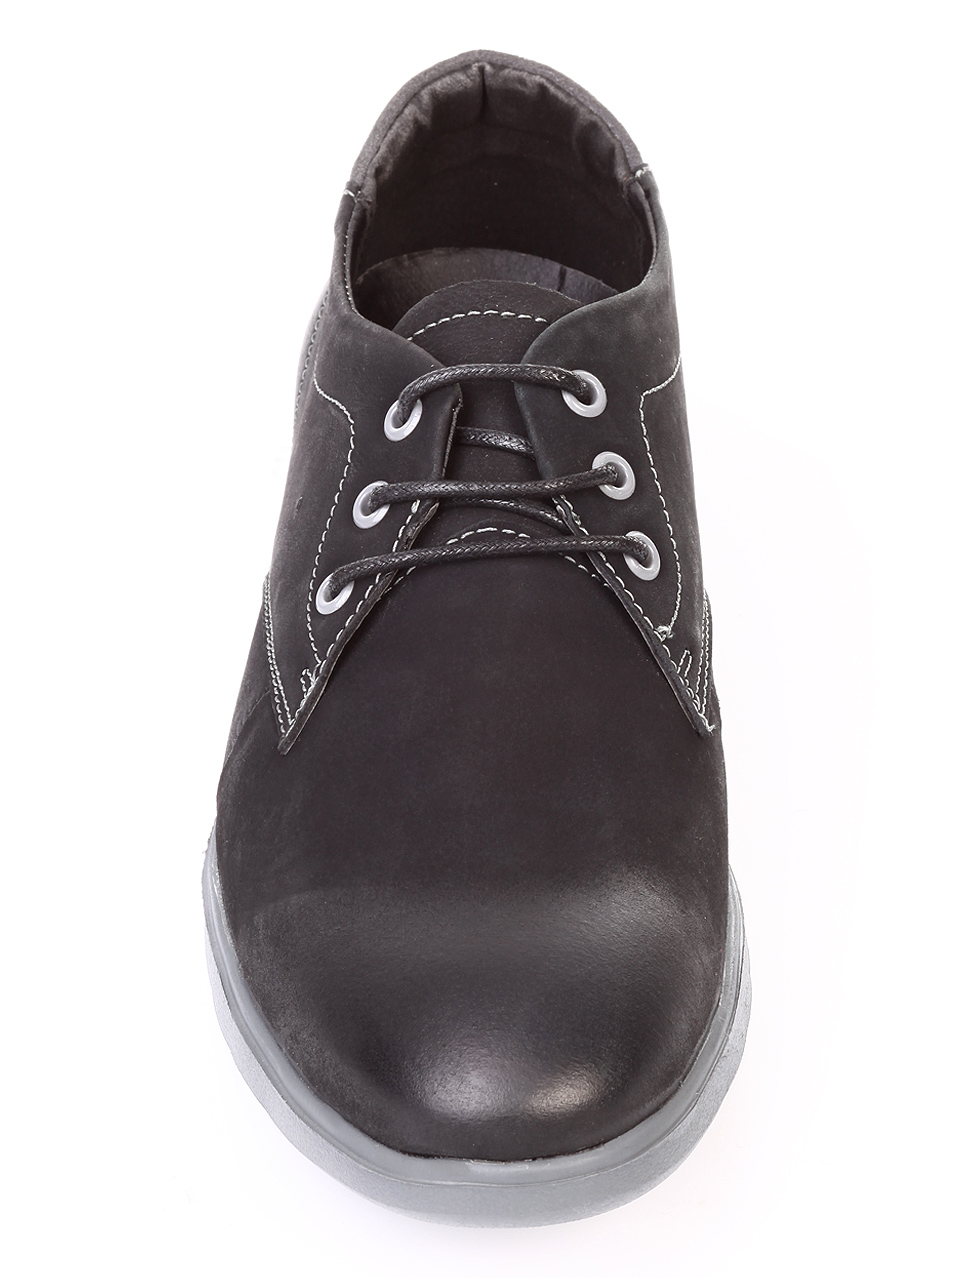 Ежедневни мъжки обувки от естествен набук 7N-18722 black